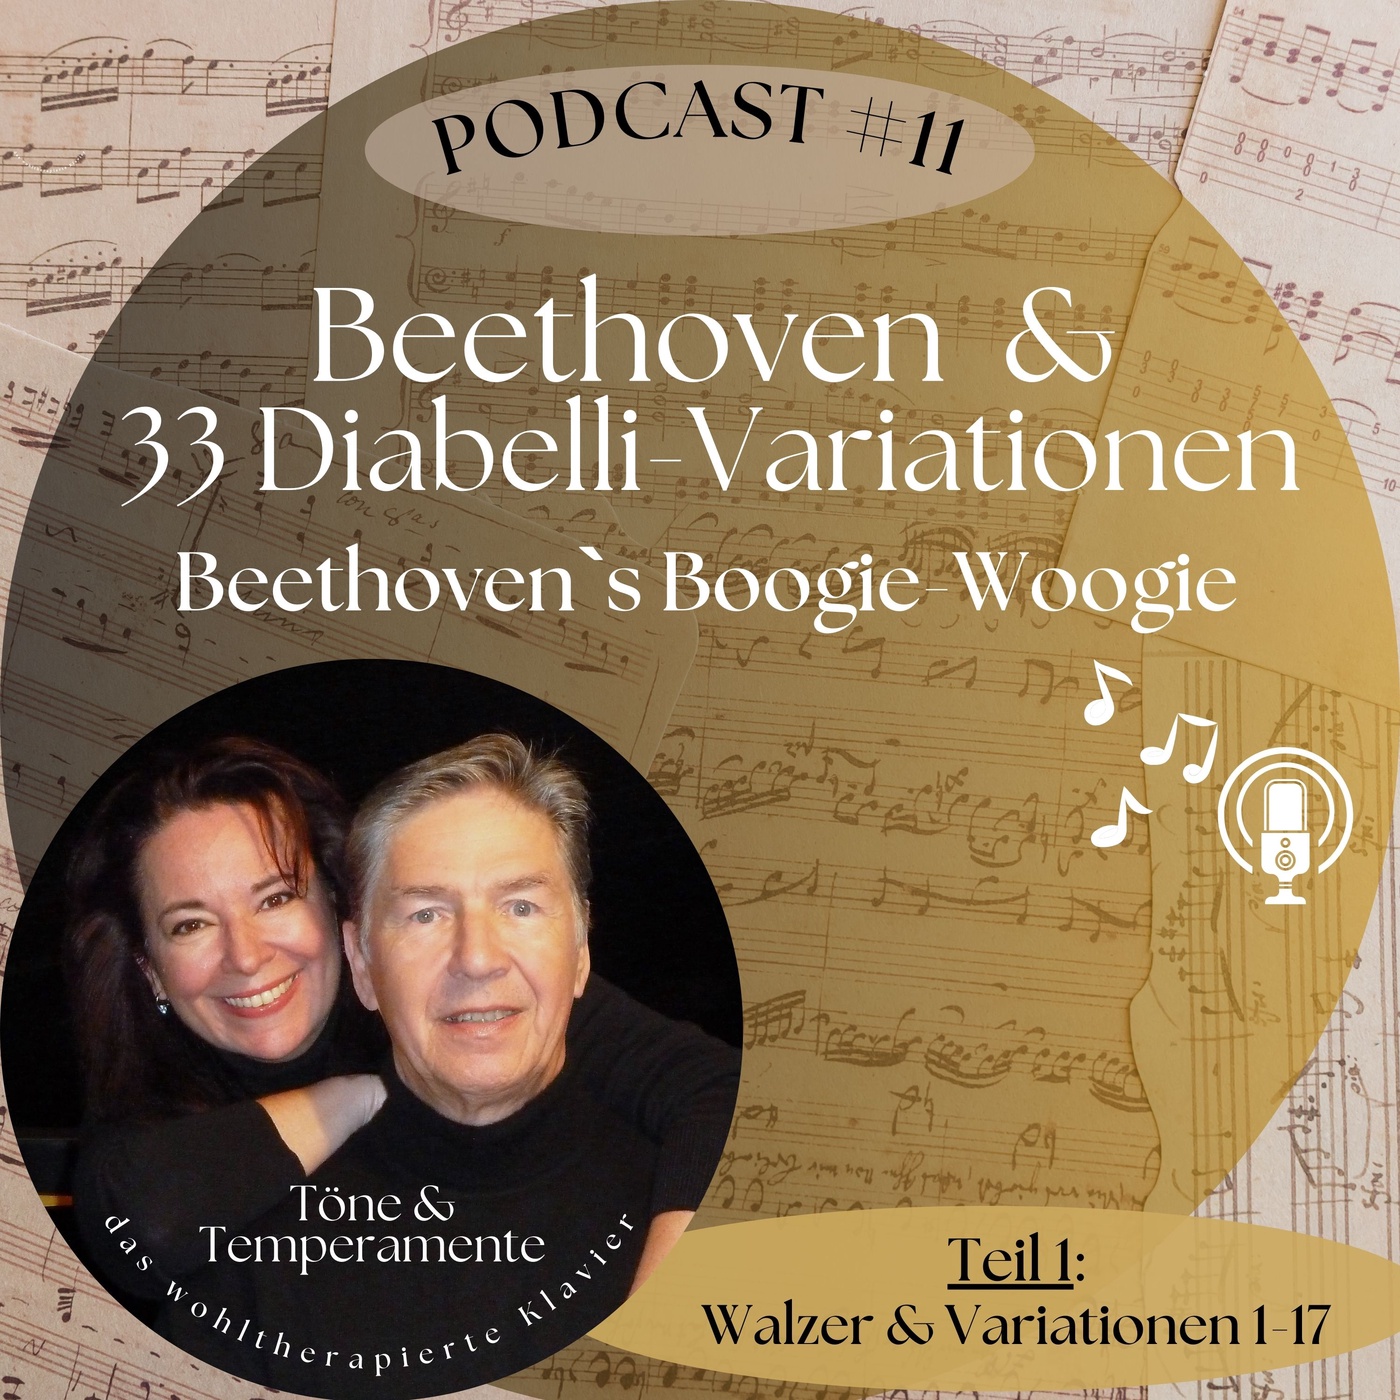 #11 Beethoven & 33 Diabelli Variationen - Beethoven`s Boogie-Woogie? (Teil 1 / #14 ist Teil 2 😉)